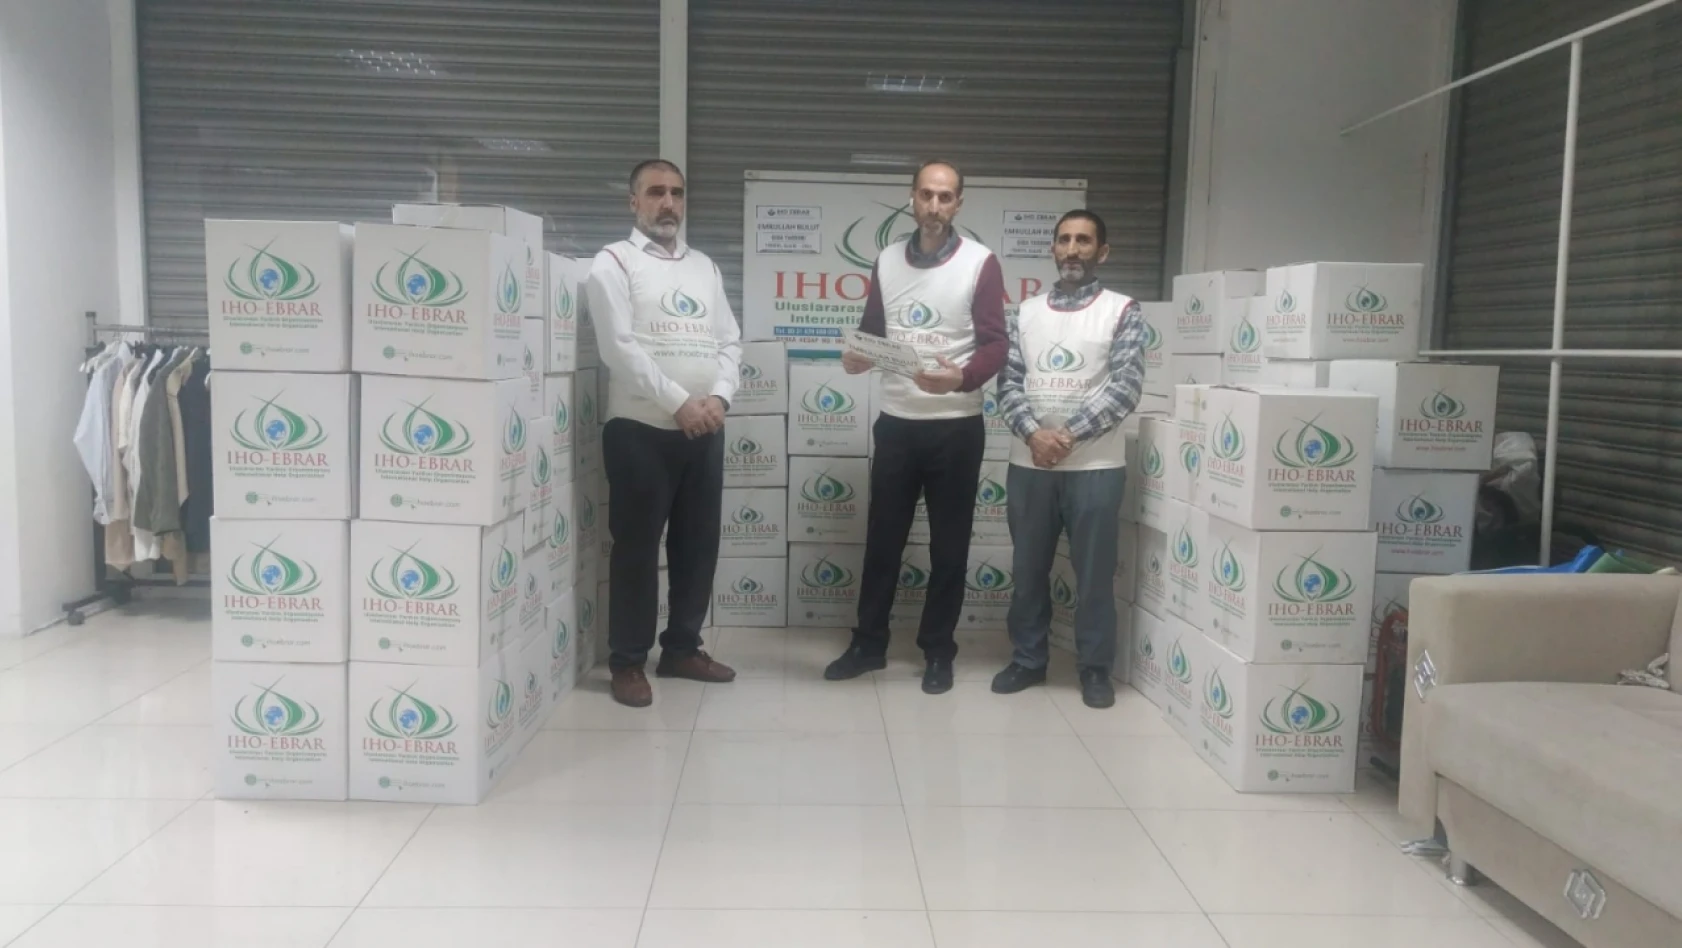 Avrupa İHO EBRAR Elazığ'da Ramazan Ayında Yardım Çalışması Gerçekleştirdi